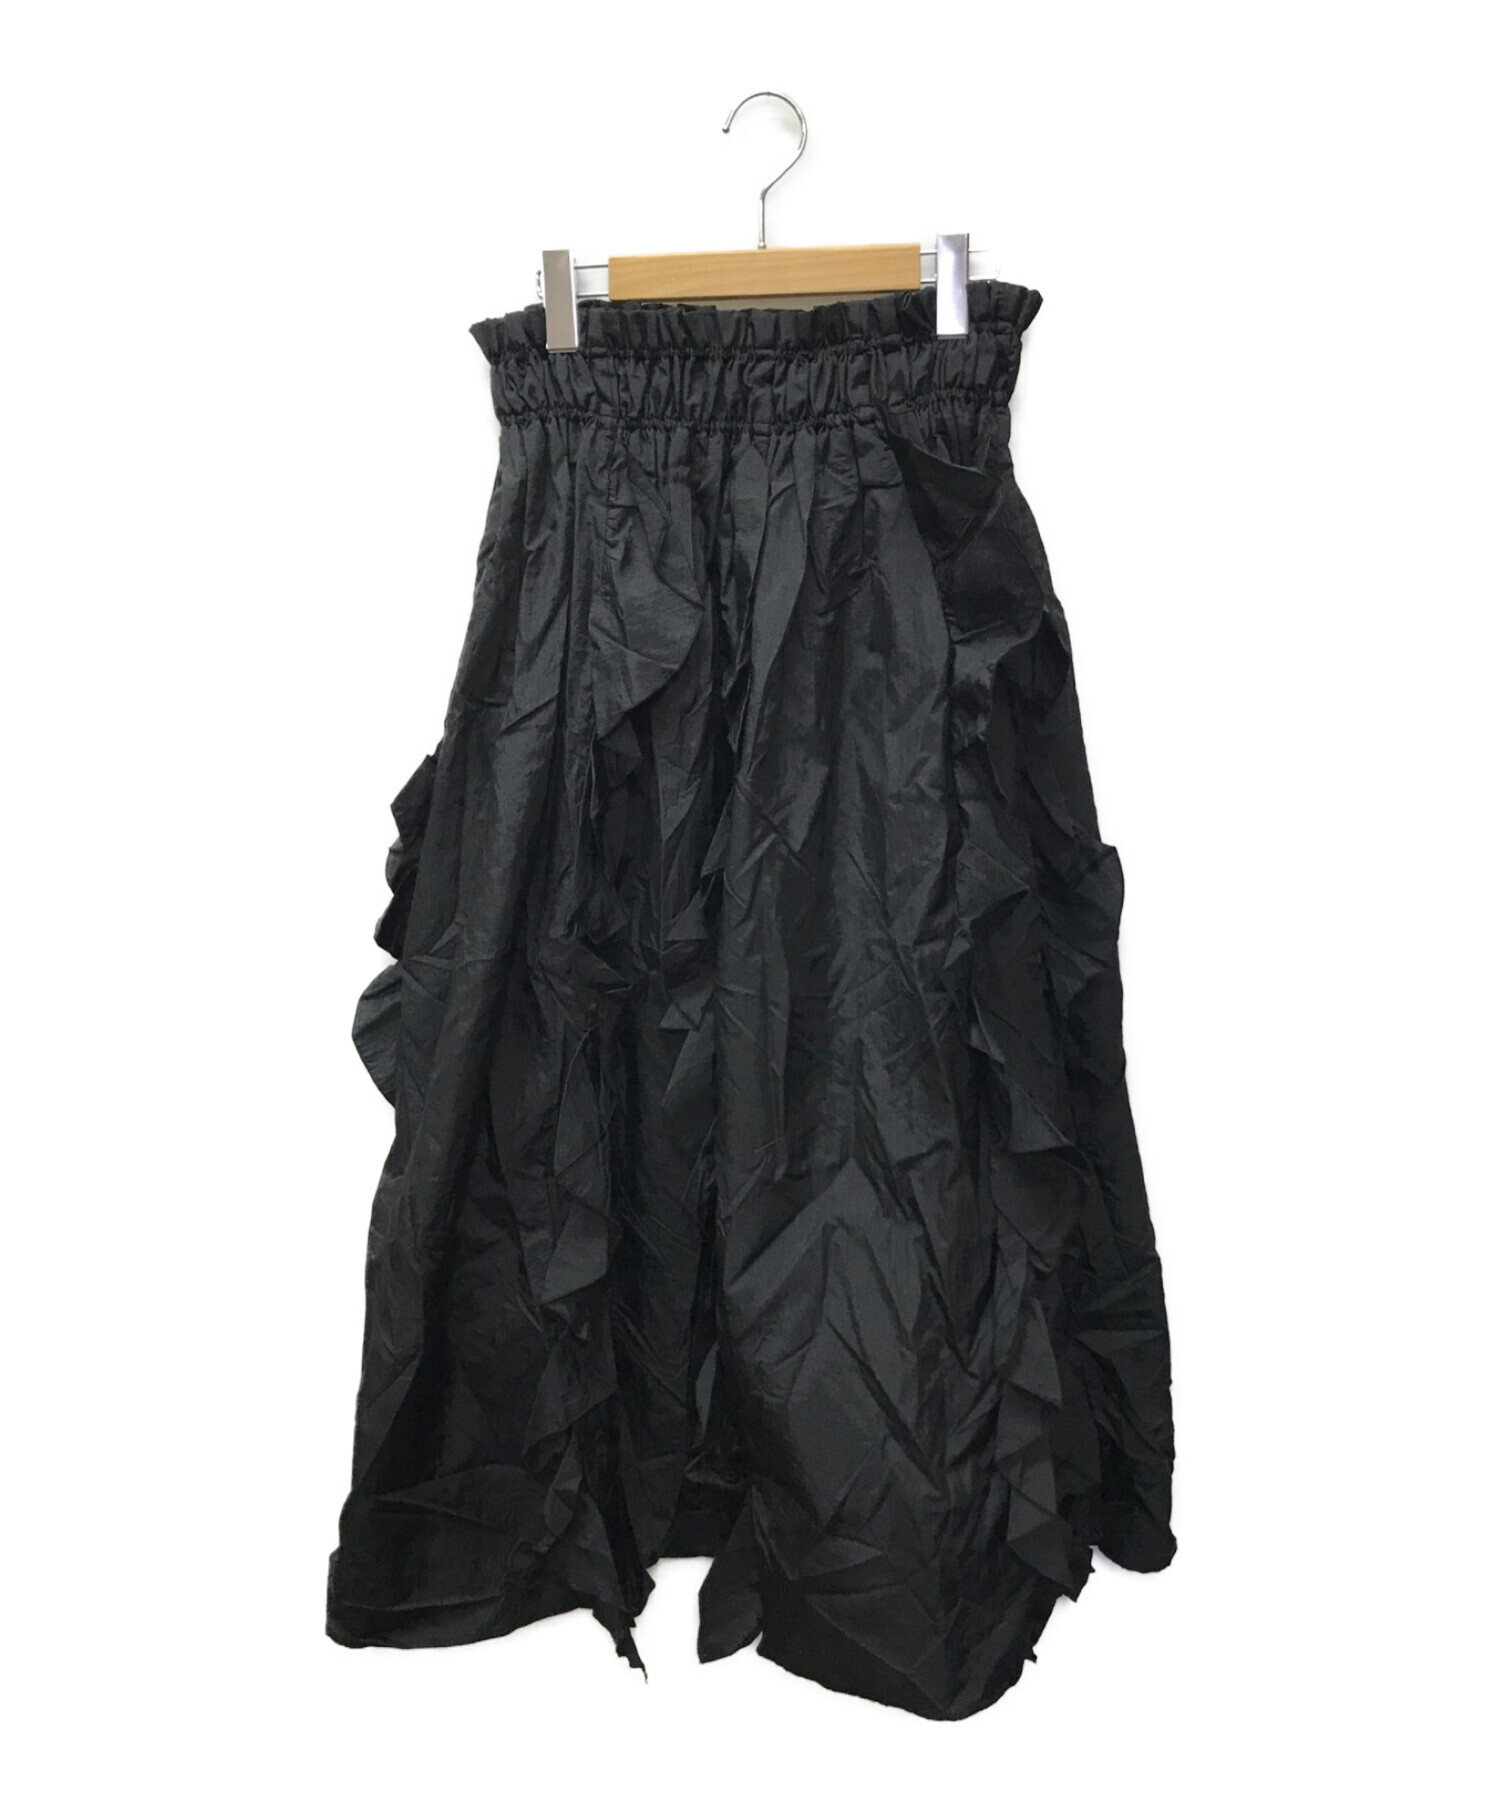 COEL (コエル) フリルサス付きスカート ブラック サイズ:36 未使用品